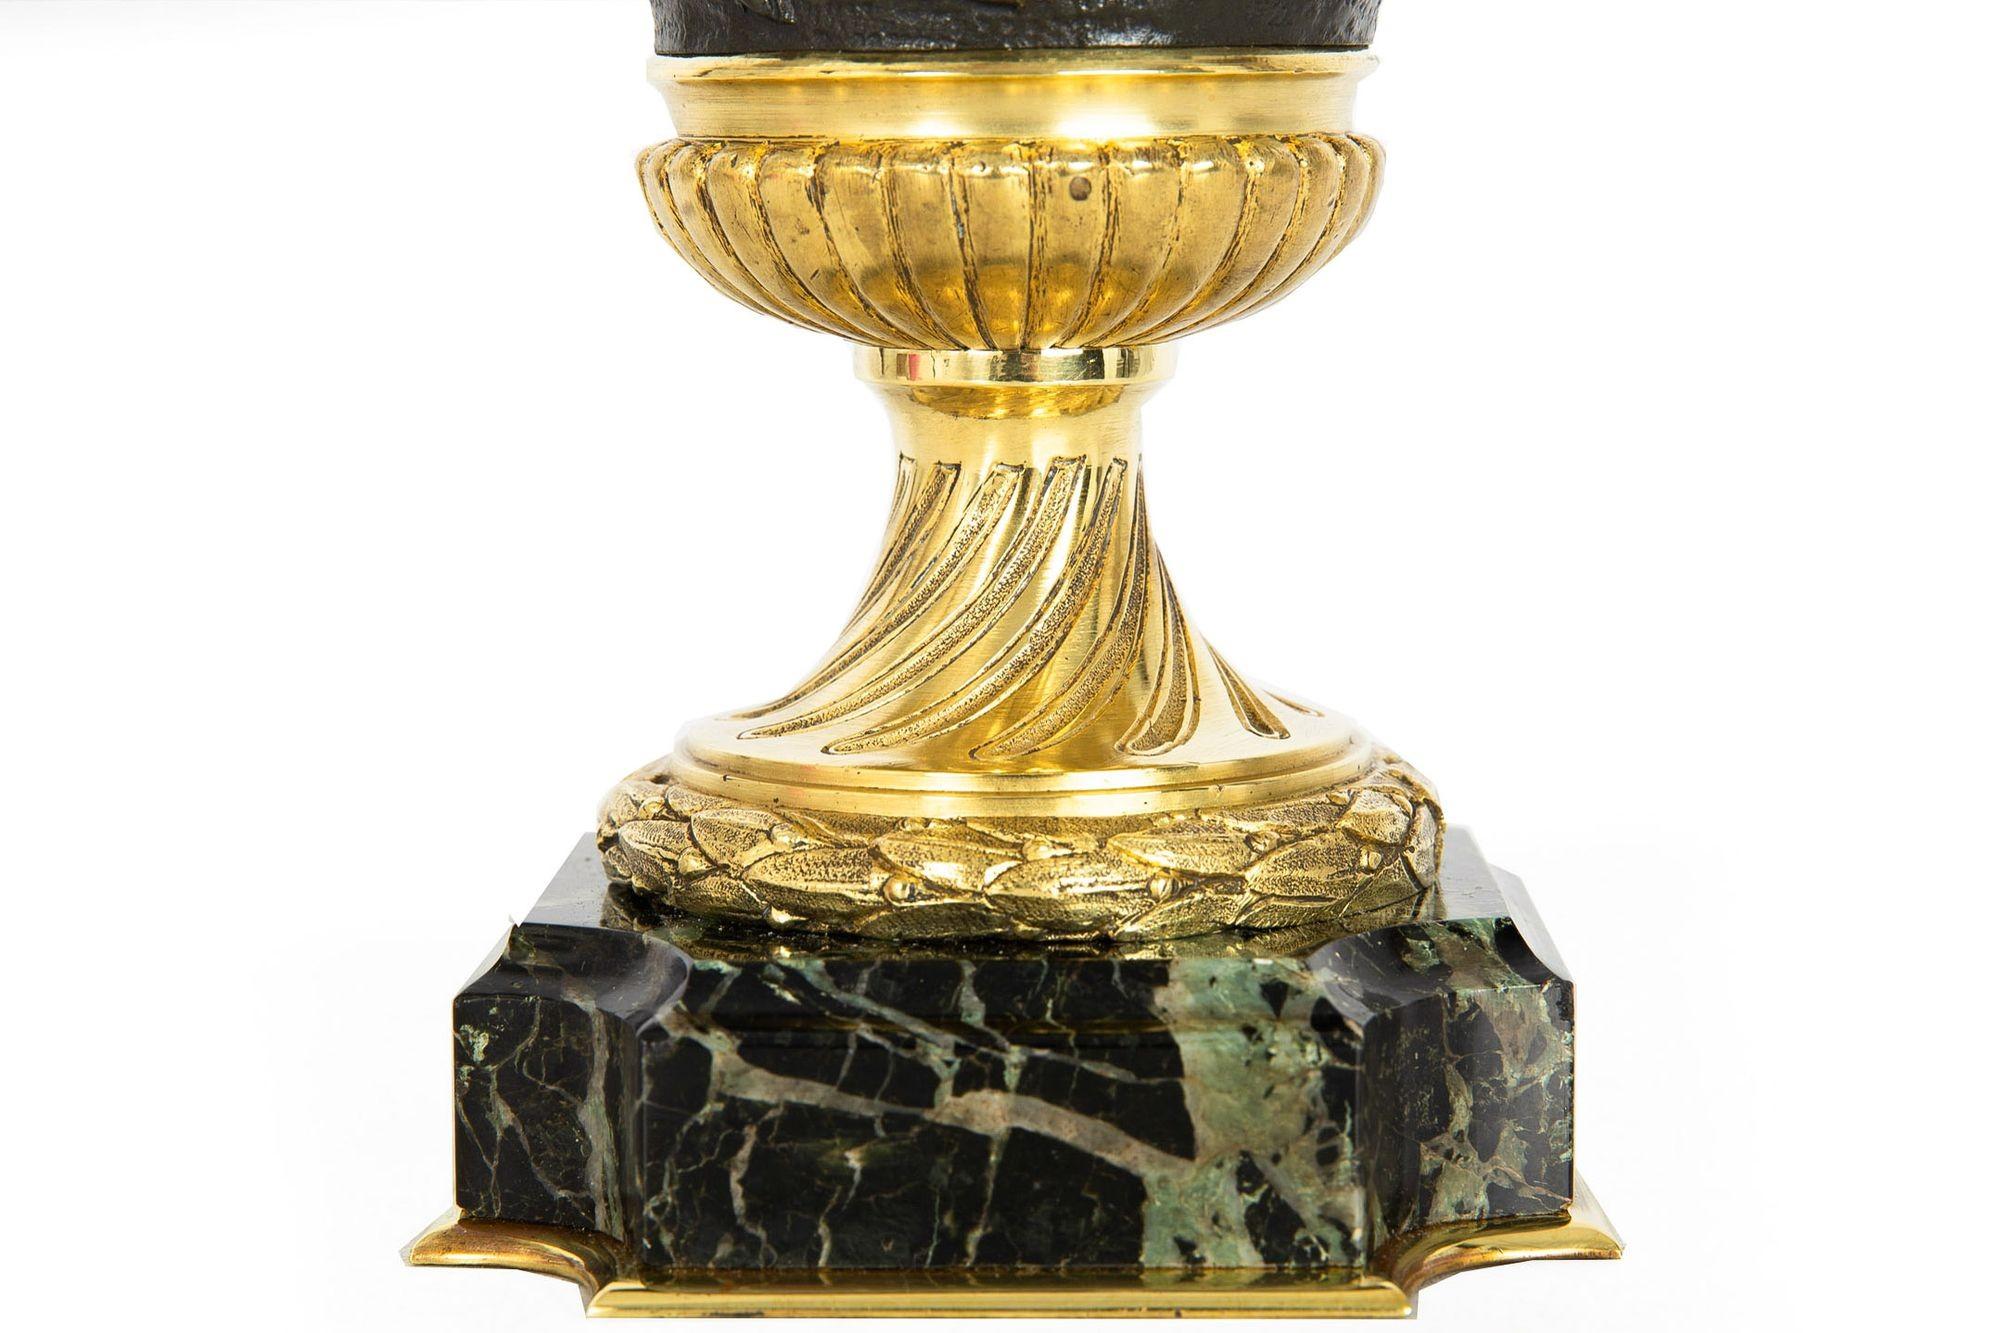 Grand Tour Bronze Cassolette Urn Vase after Claude Michel Clodion c. 1870 For Sale 9